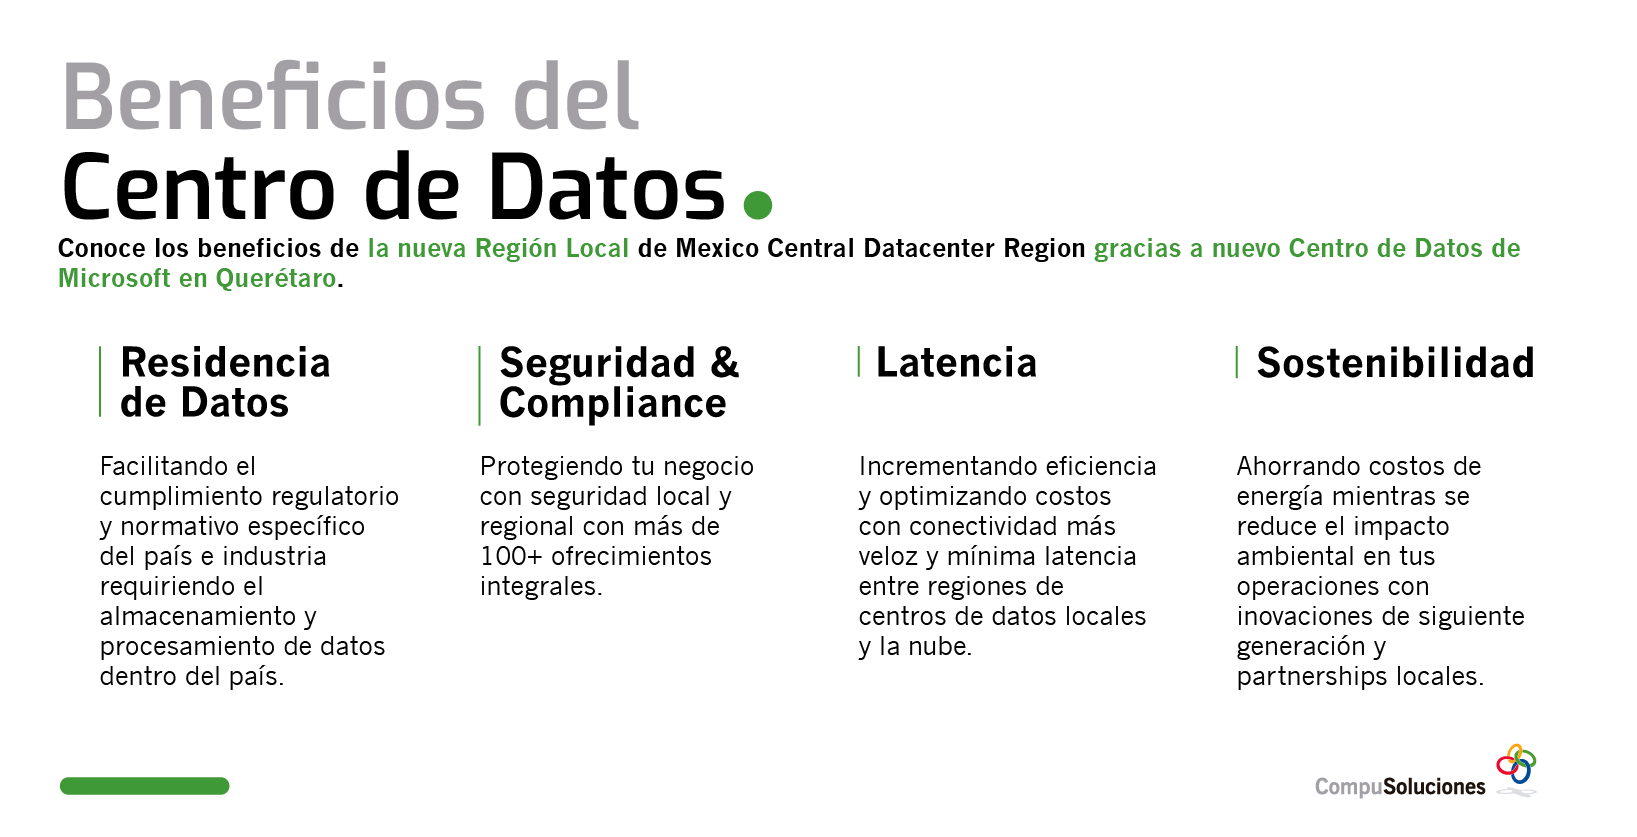 Microsoft Querétaro